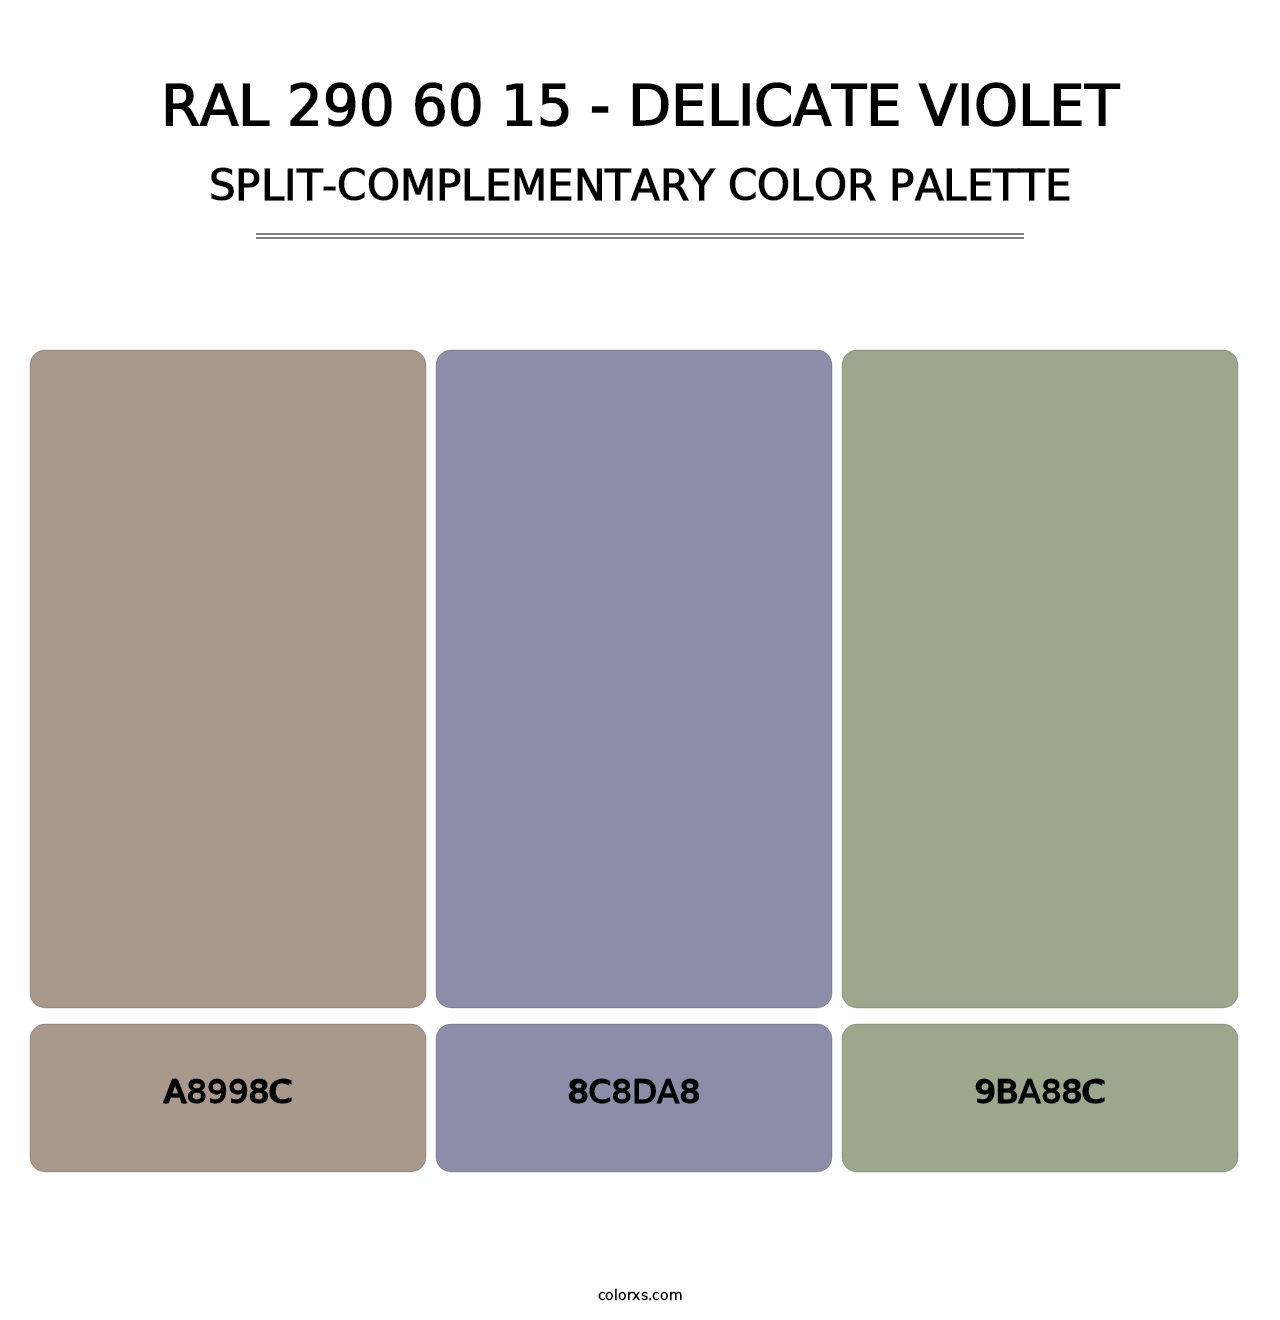 RAL 290 60 15 - Delicate Violet - Split-Complementary Color Palette